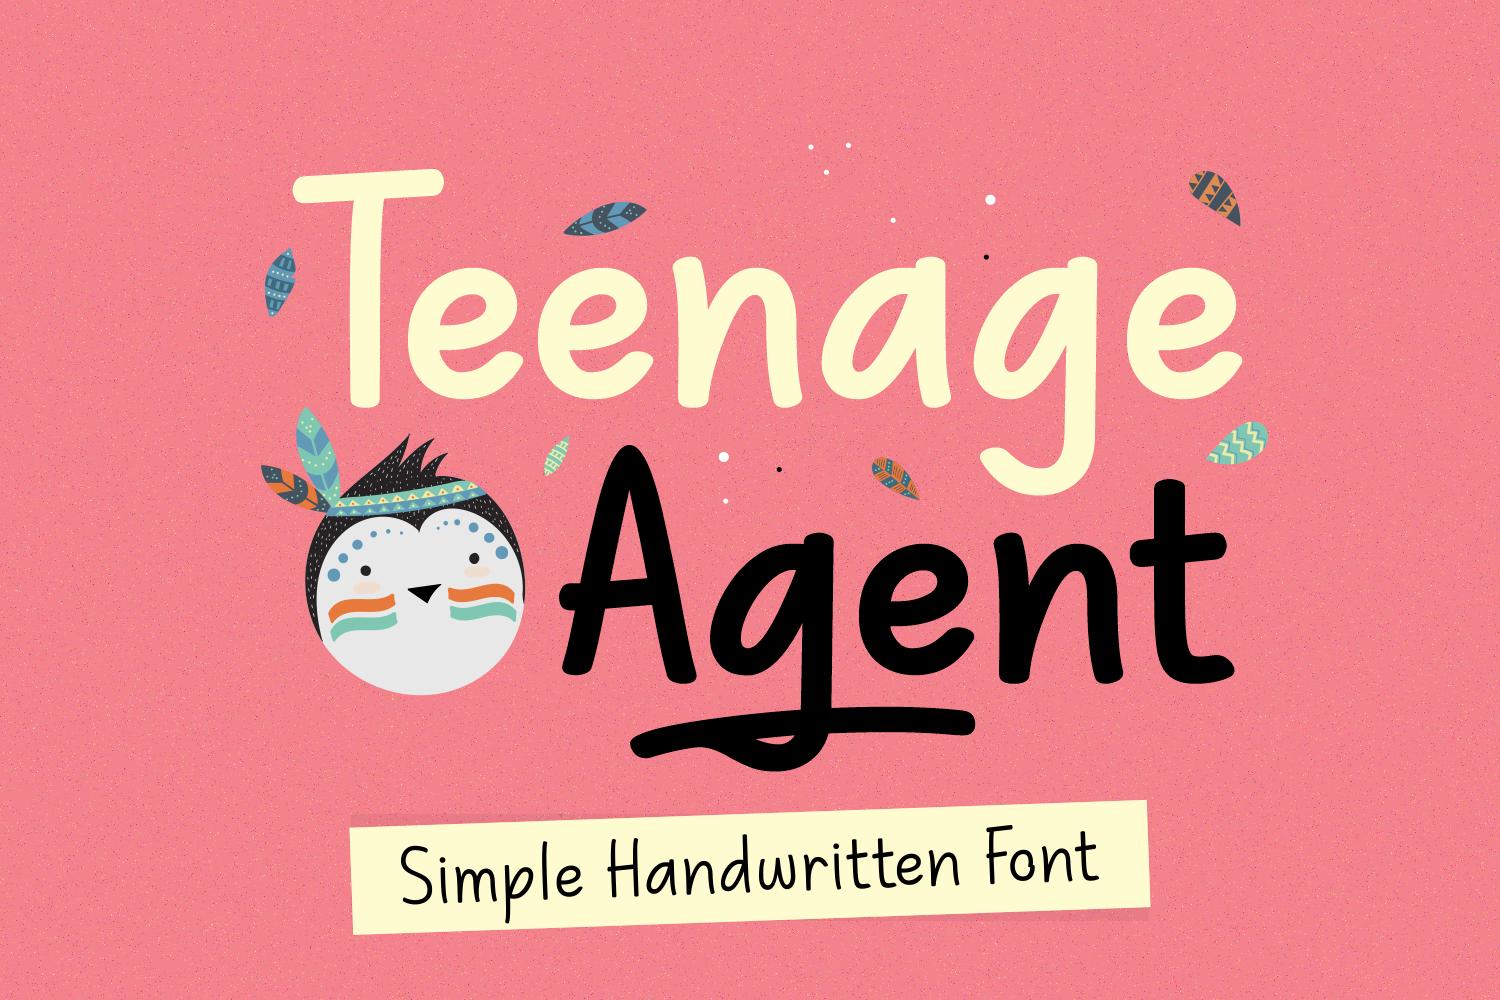 Teenage Agent Font